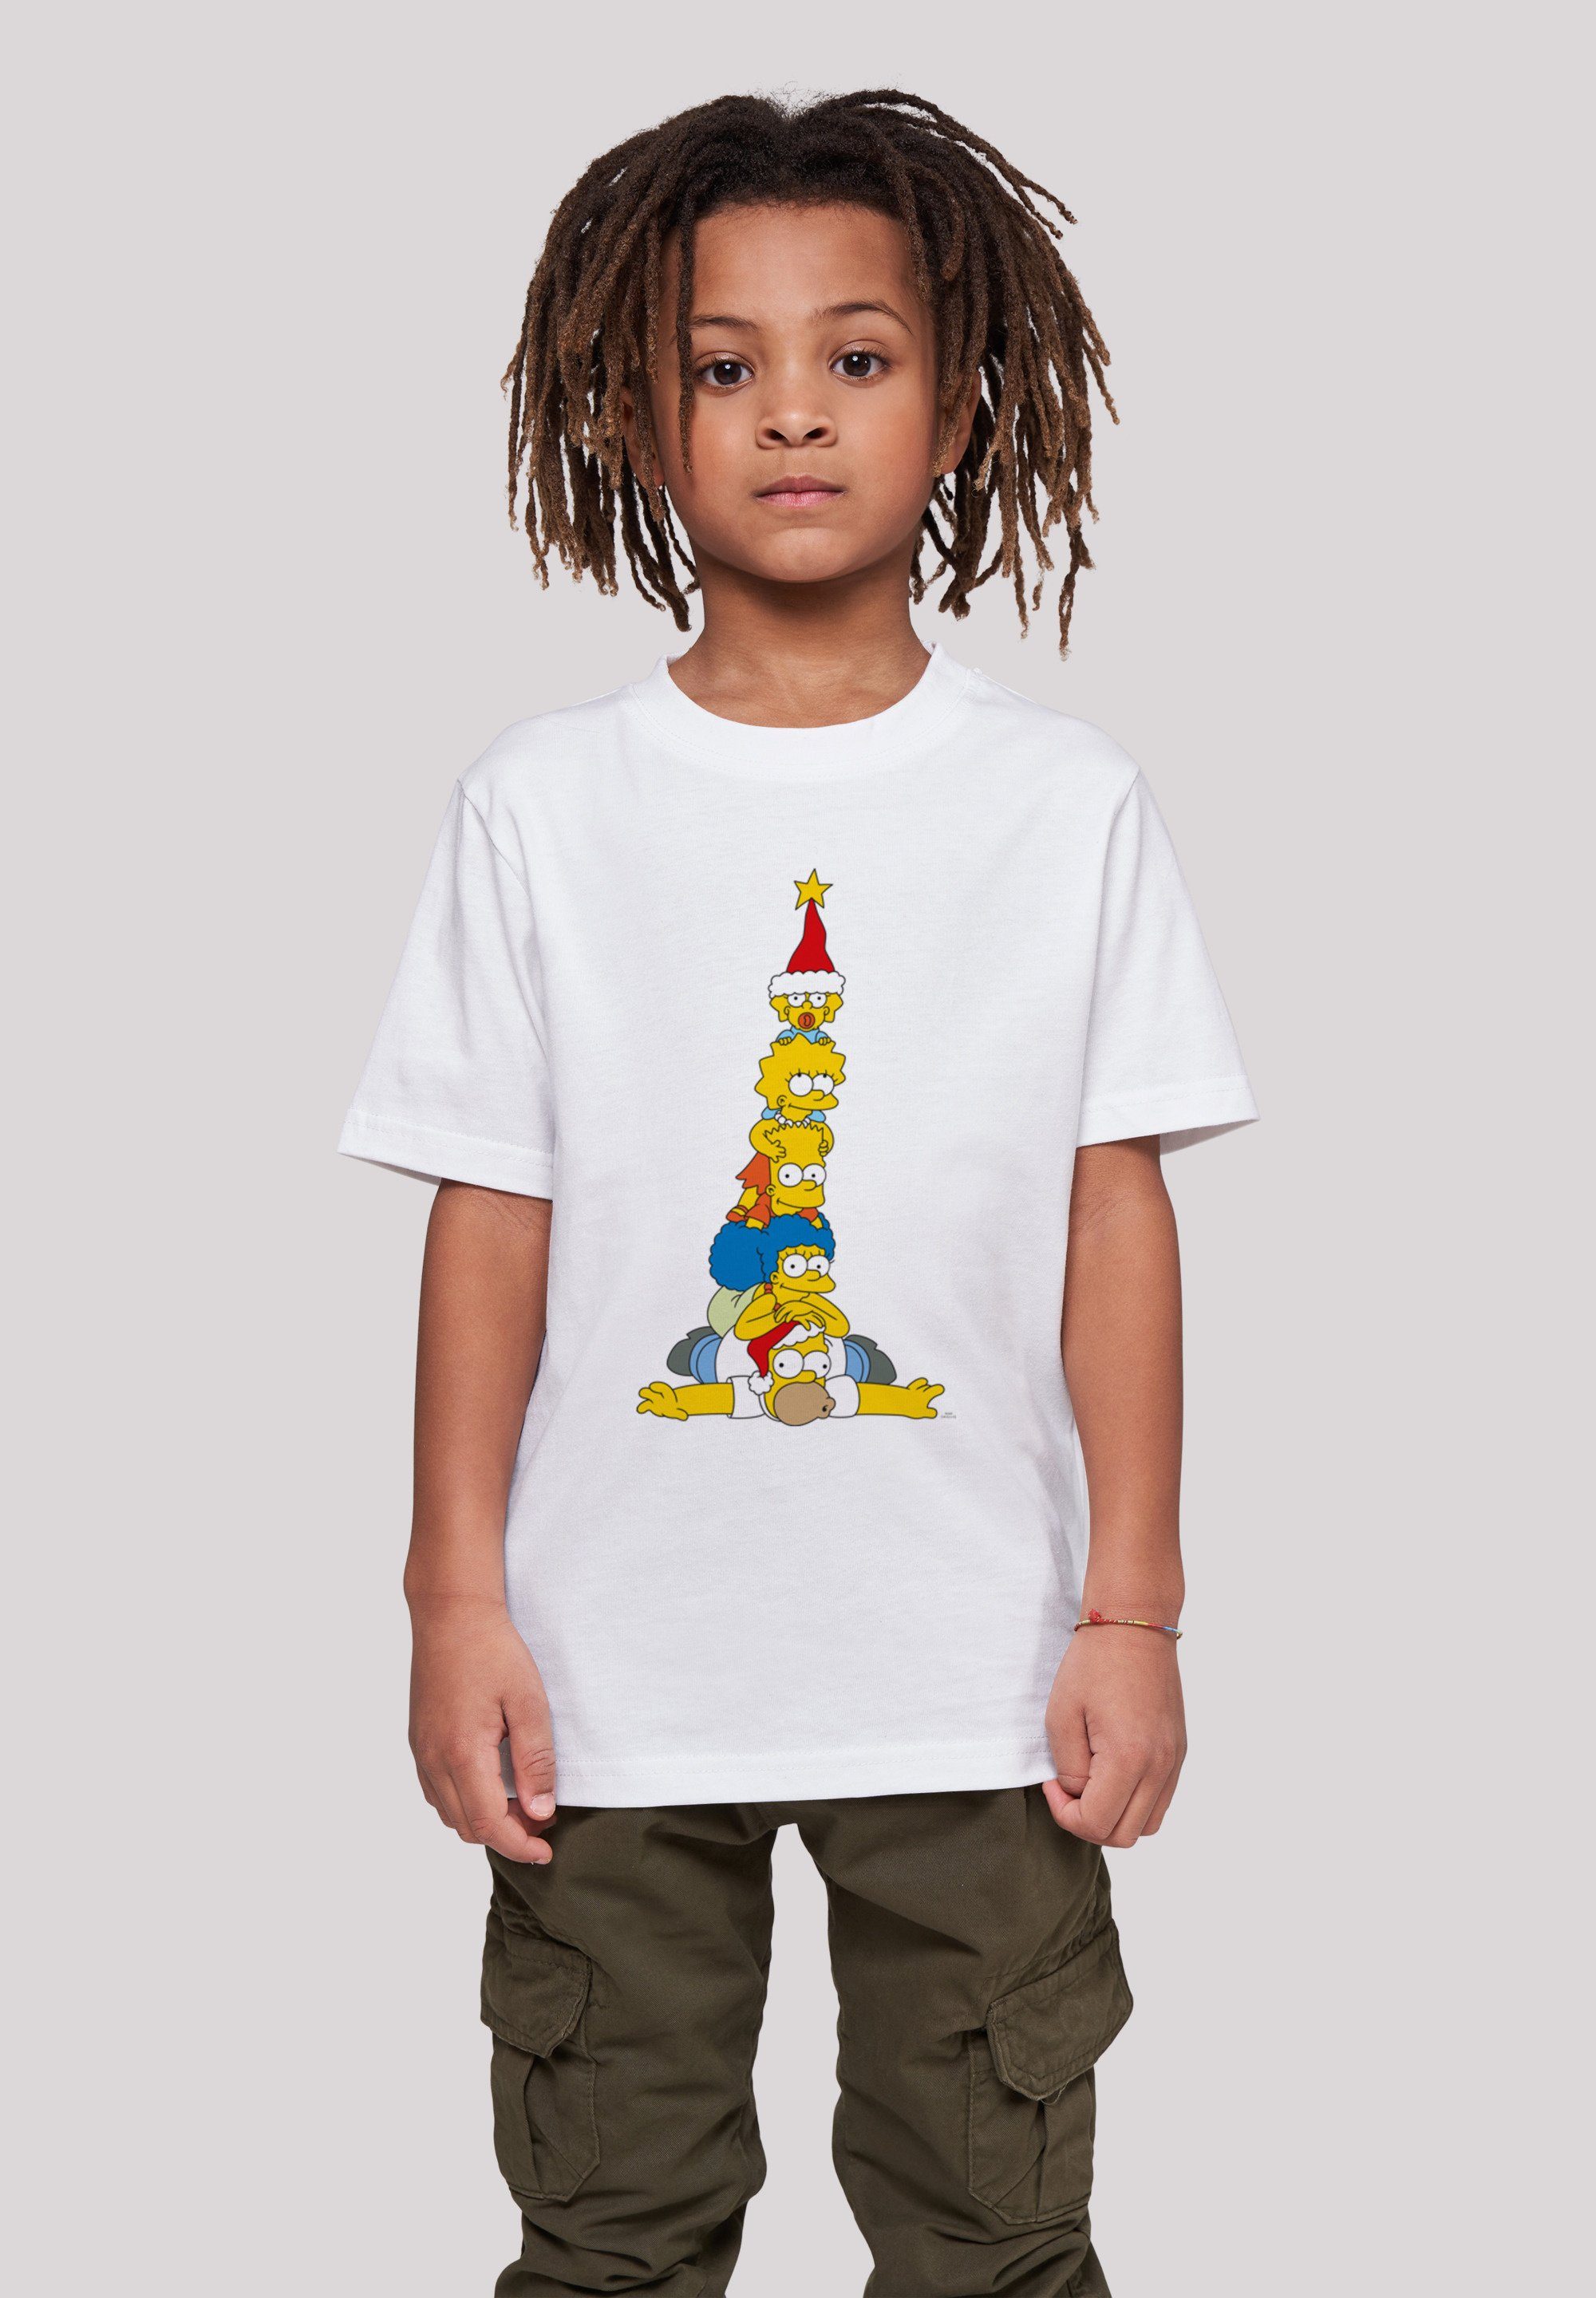 hohem The mit Print, Family Sehr T-Shirt Tragekomfort Baumwollstoff Simpsons weicher F4NT4STIC Weihnachtsbaum Christmas